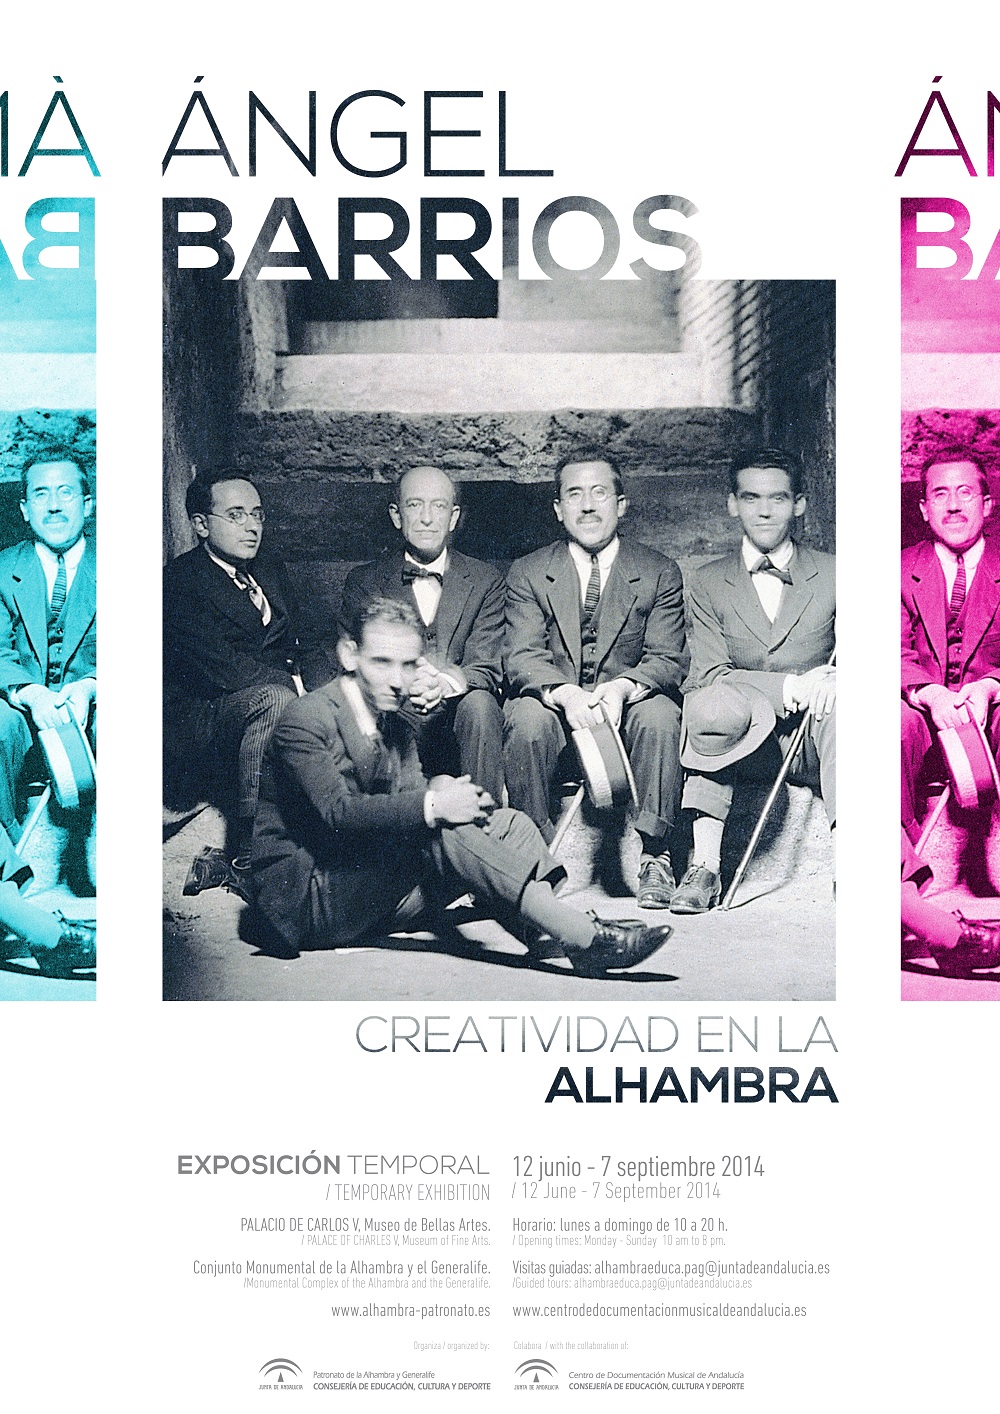 Creatividad en la Alhambra (Ángel Barrios Creativity in the Alhambra)